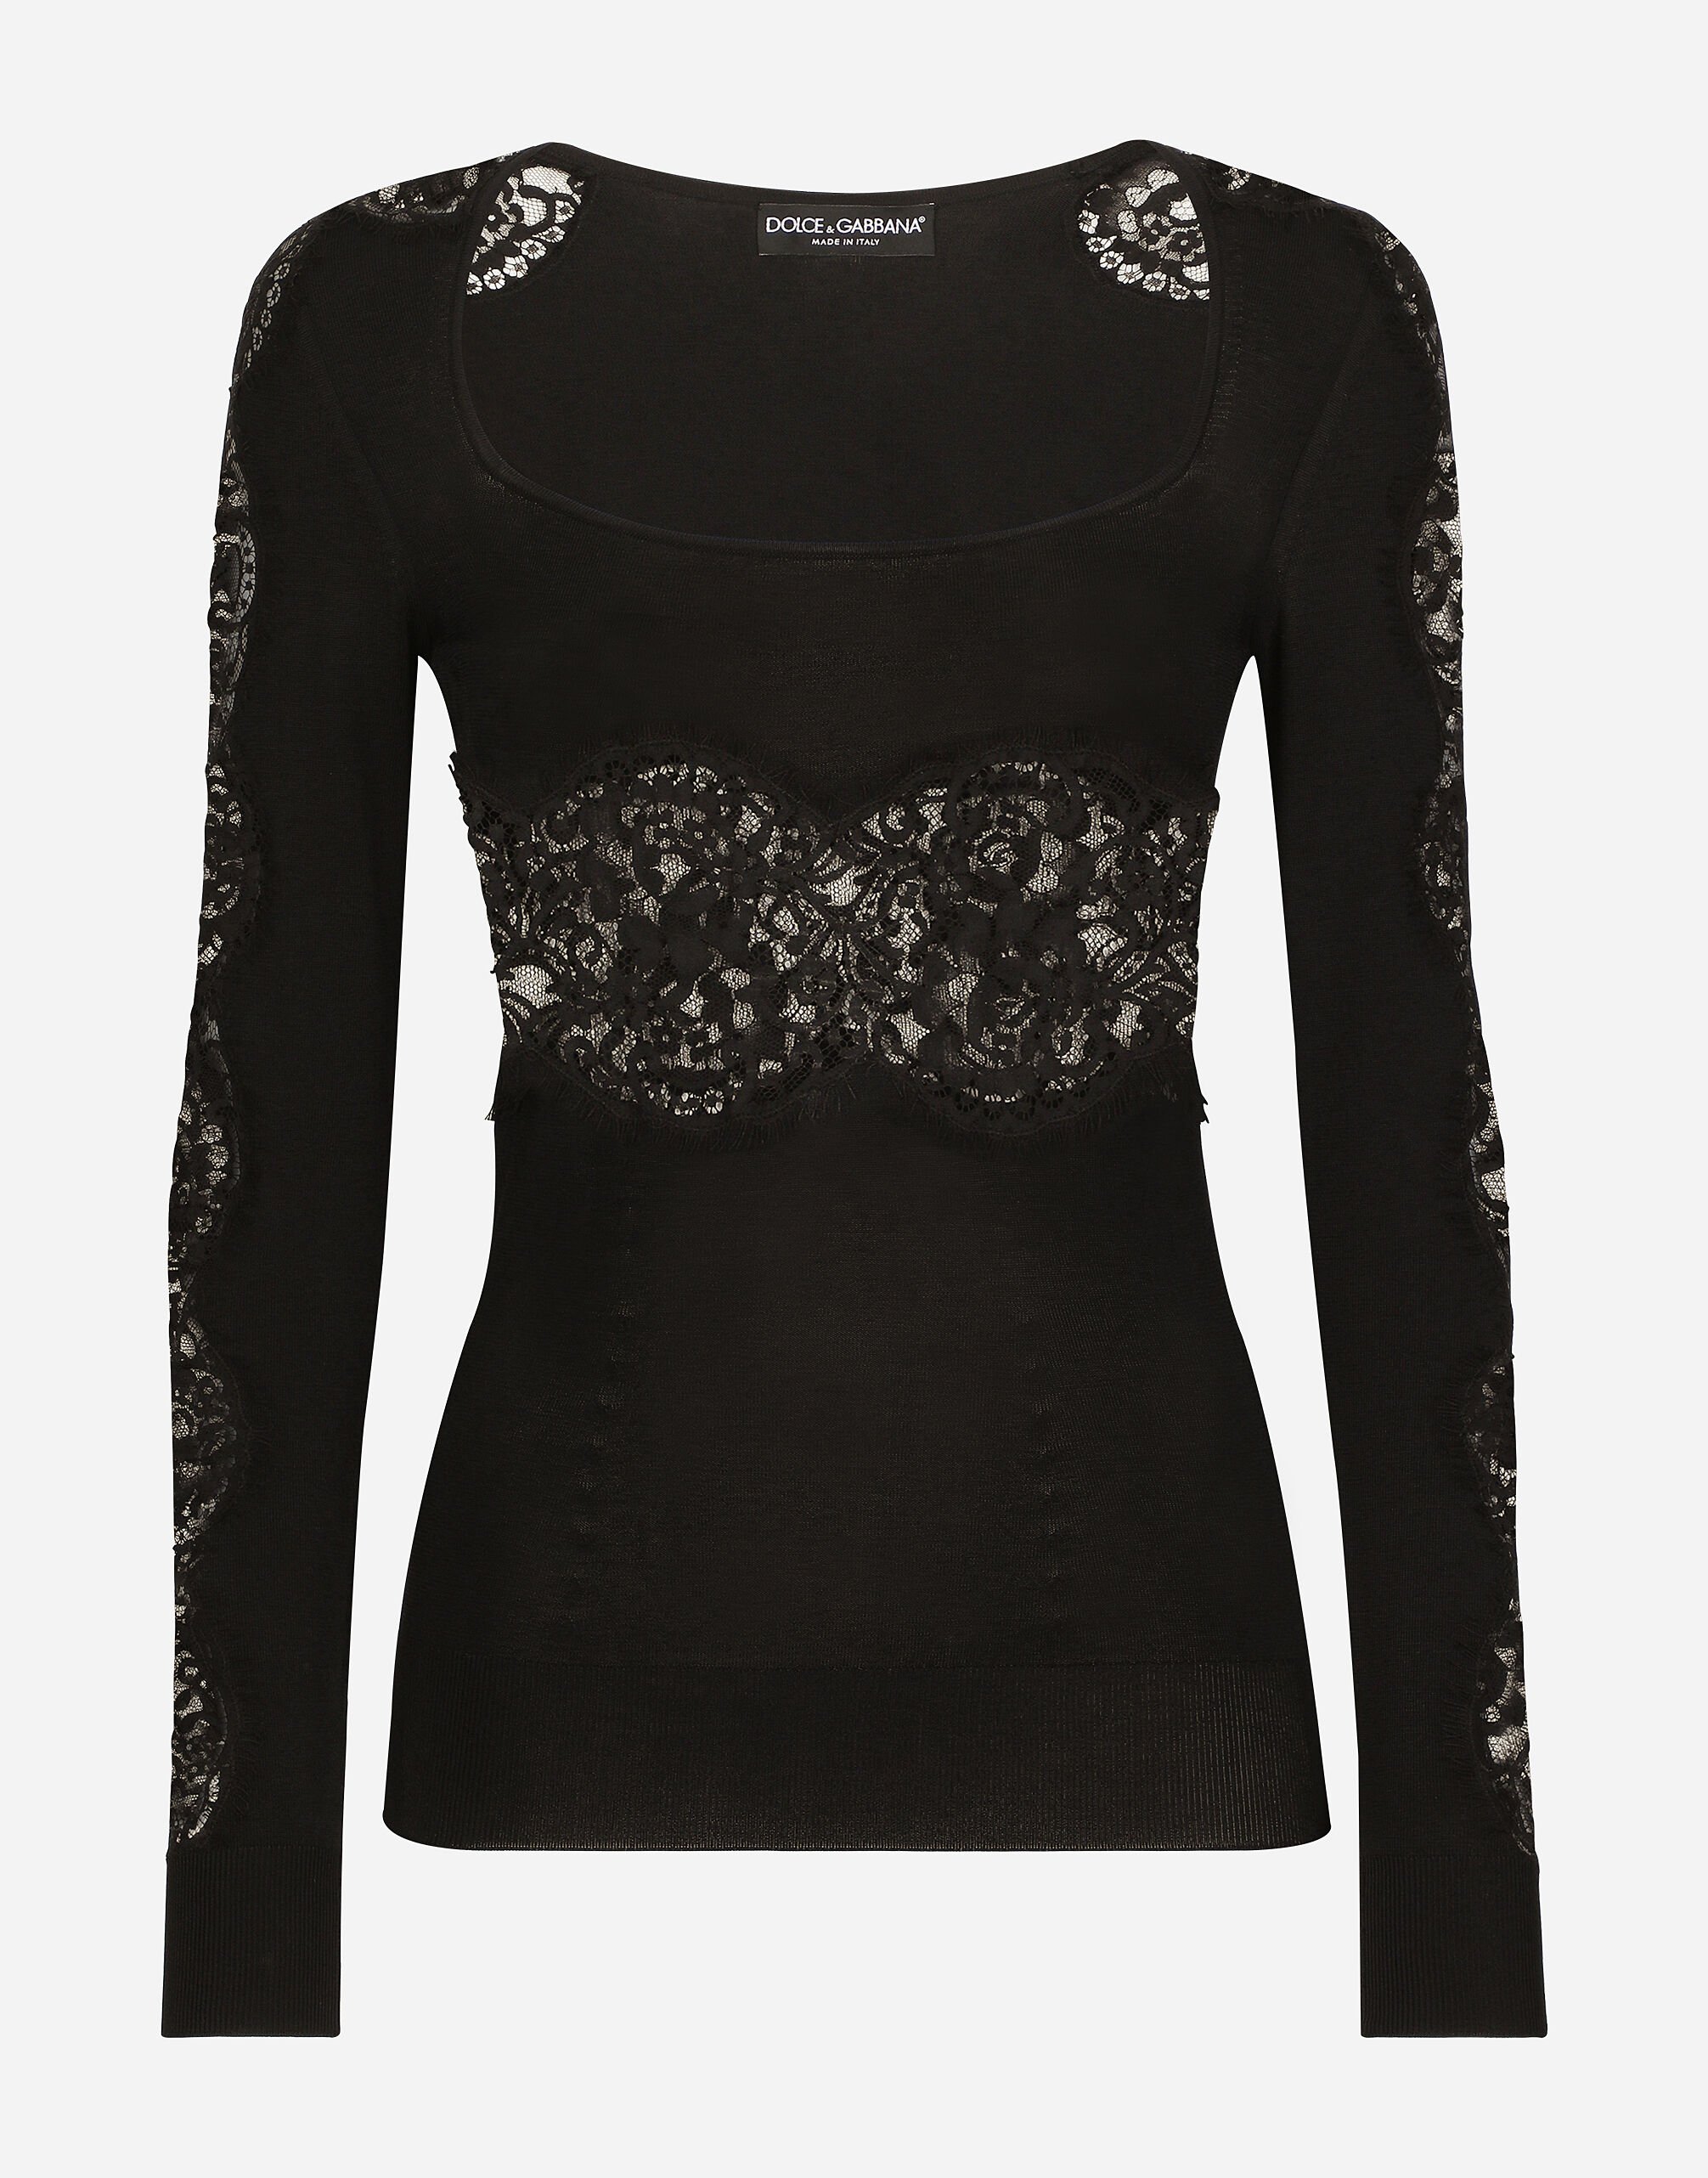 Dolce&Gabbana 레이스 인서트 비스코스 스웨터 멀티 컬러 BB5970AR441